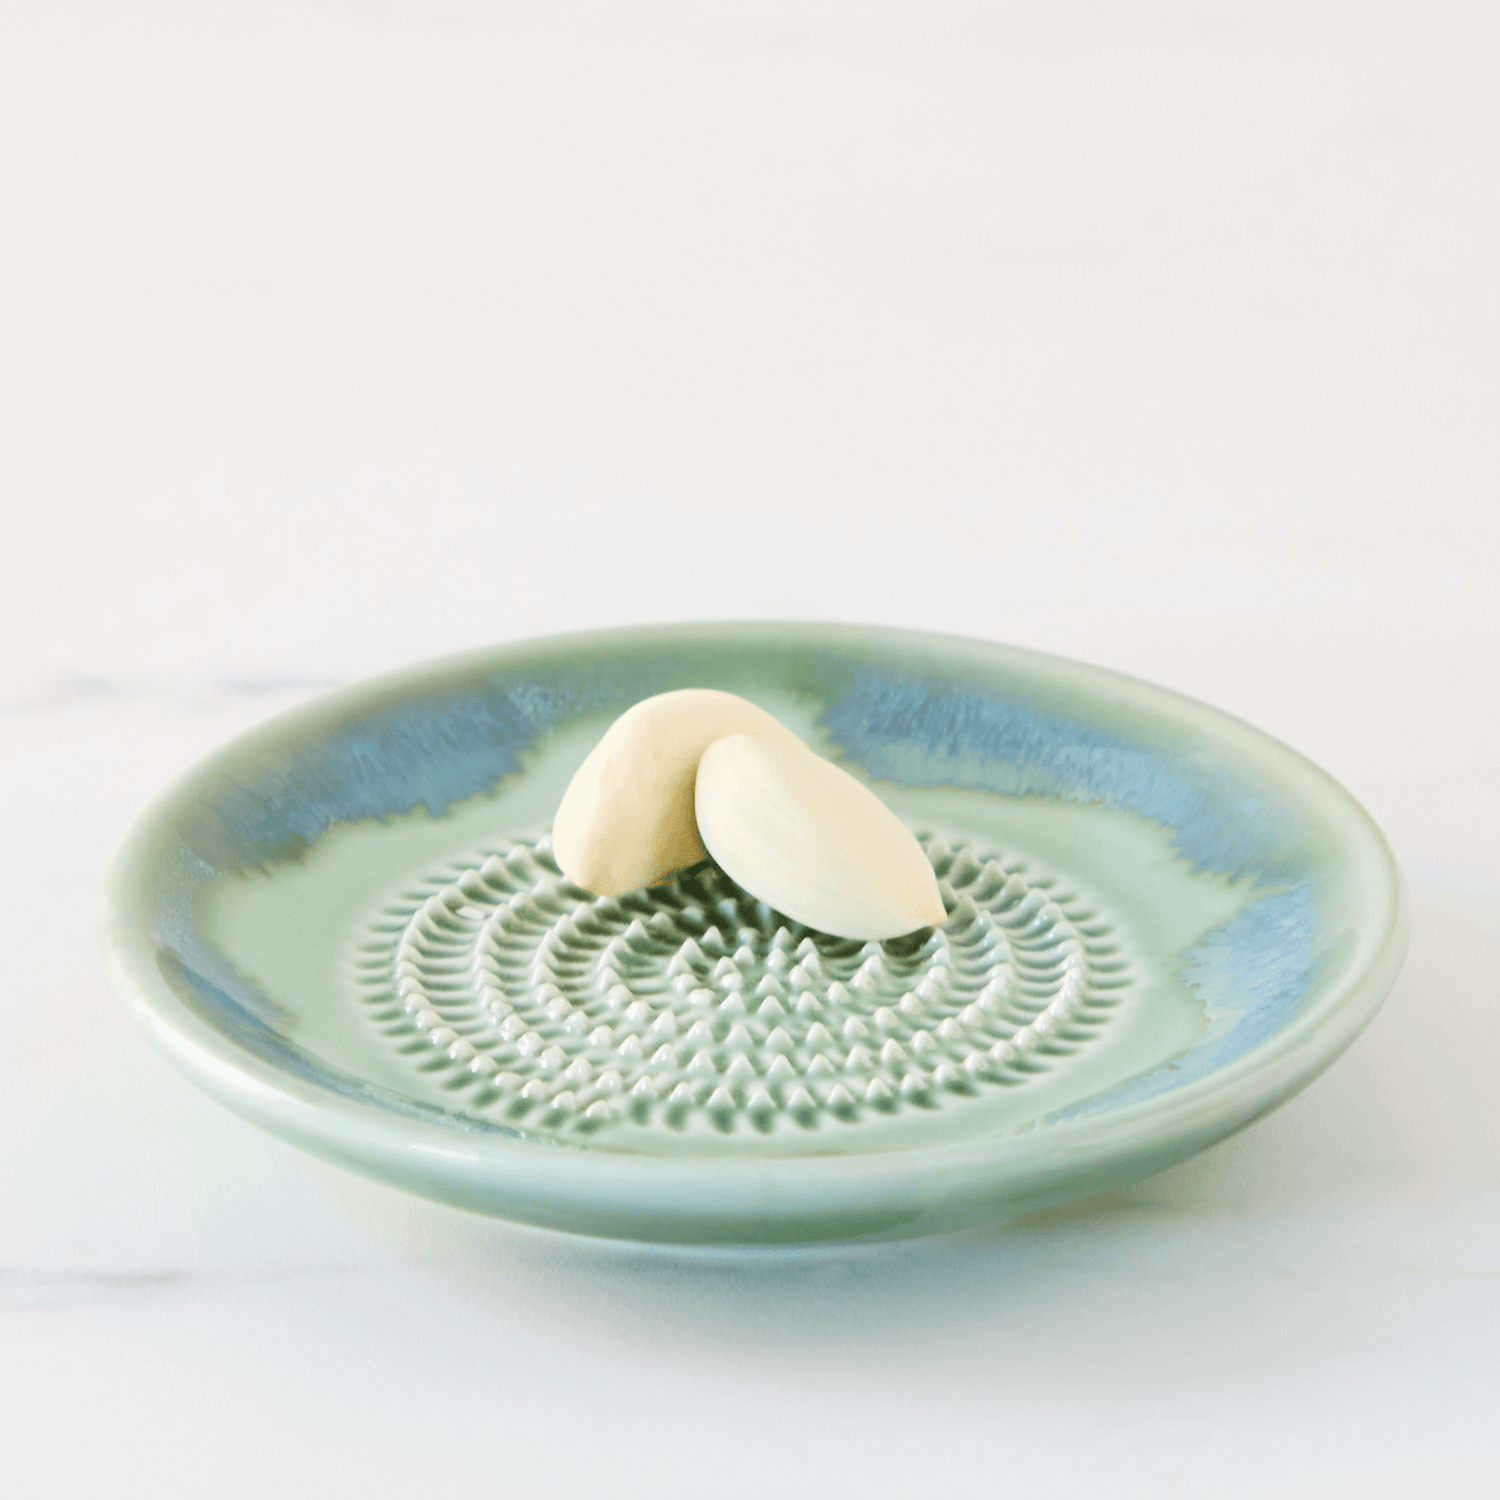 Ginger Grater Plate, Ceramic Kitchen Accessories, Utensil, Garlic